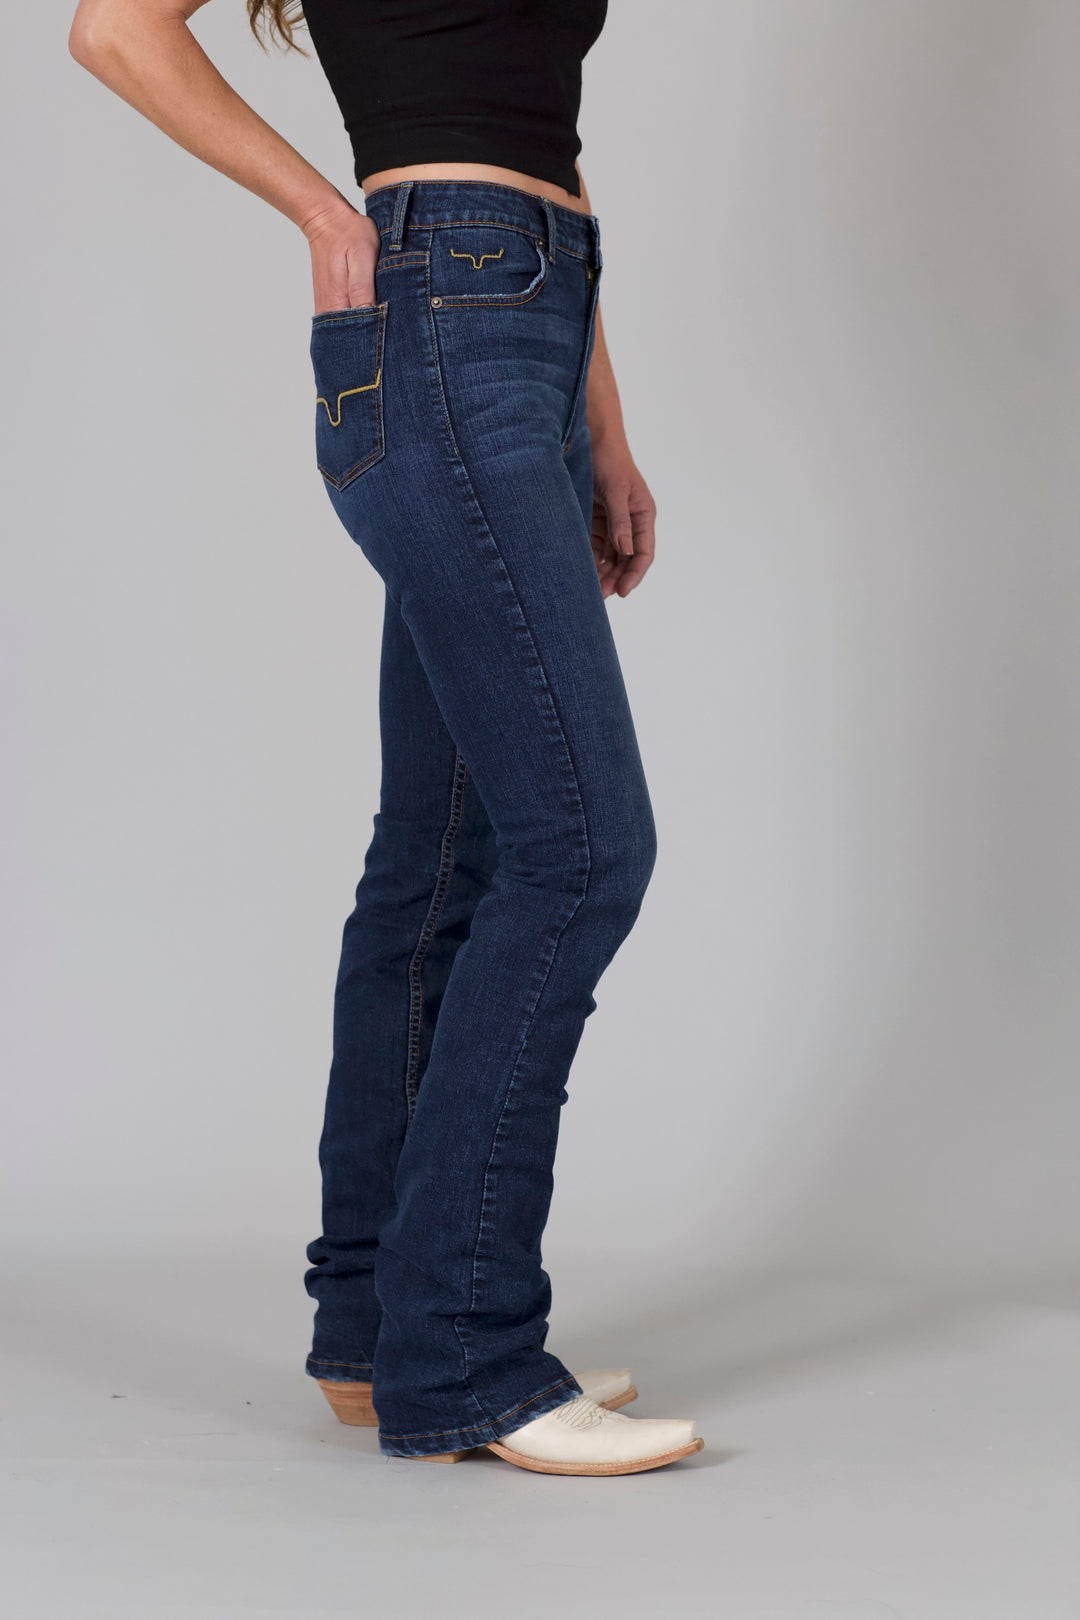 Kimes Ranch Women's Sarah Jeans (Blue)